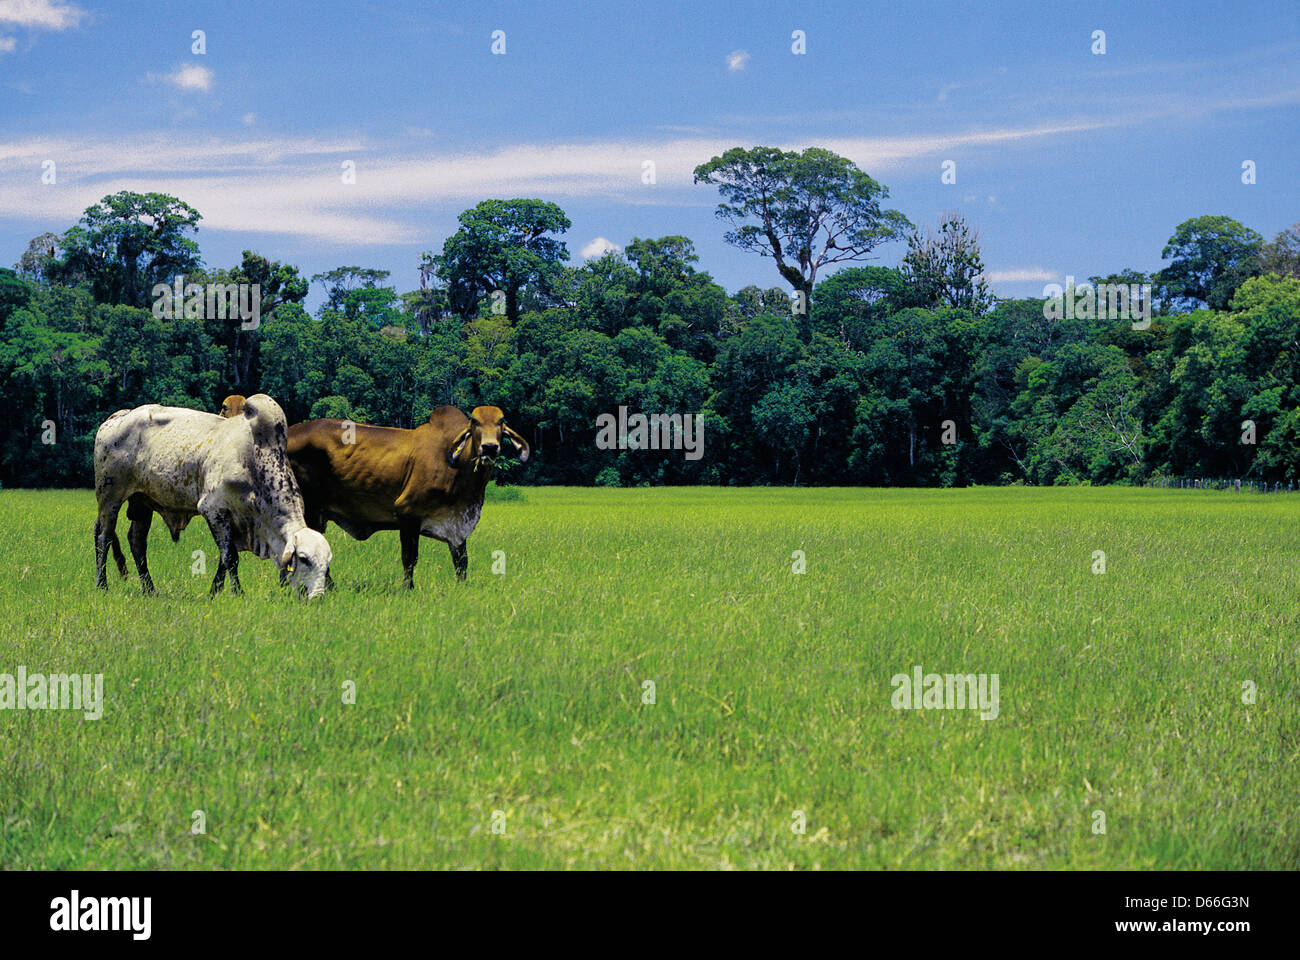 La déforestation de l'élevage du bétail dans la forêt tropicale de l'Atlantique, au Brésil. Développement économique entraînant la dégradation de l'environnement. Banque D'Images